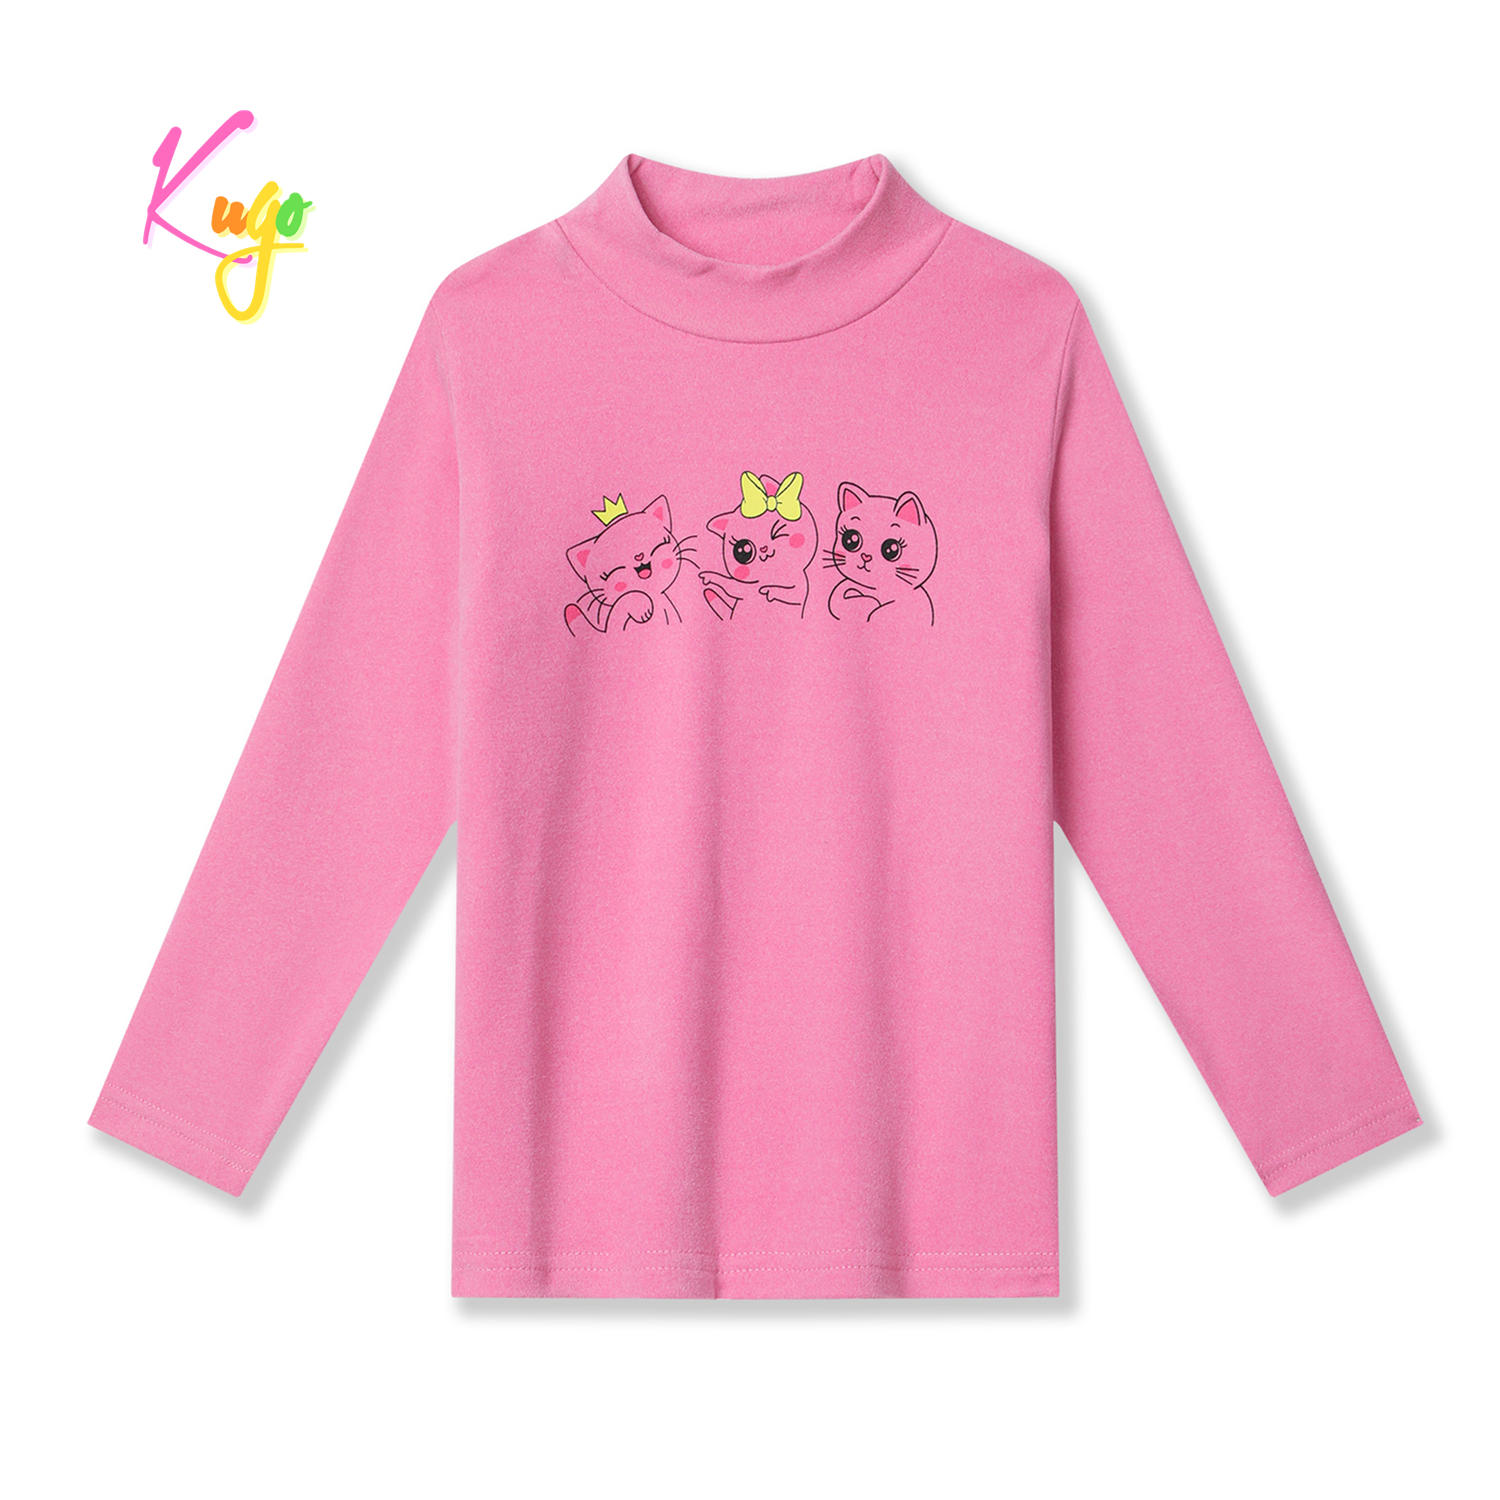 Dívčí tričko - KUGO KC2327, světlejší růžová Barva: Růžová, Velikost: 116